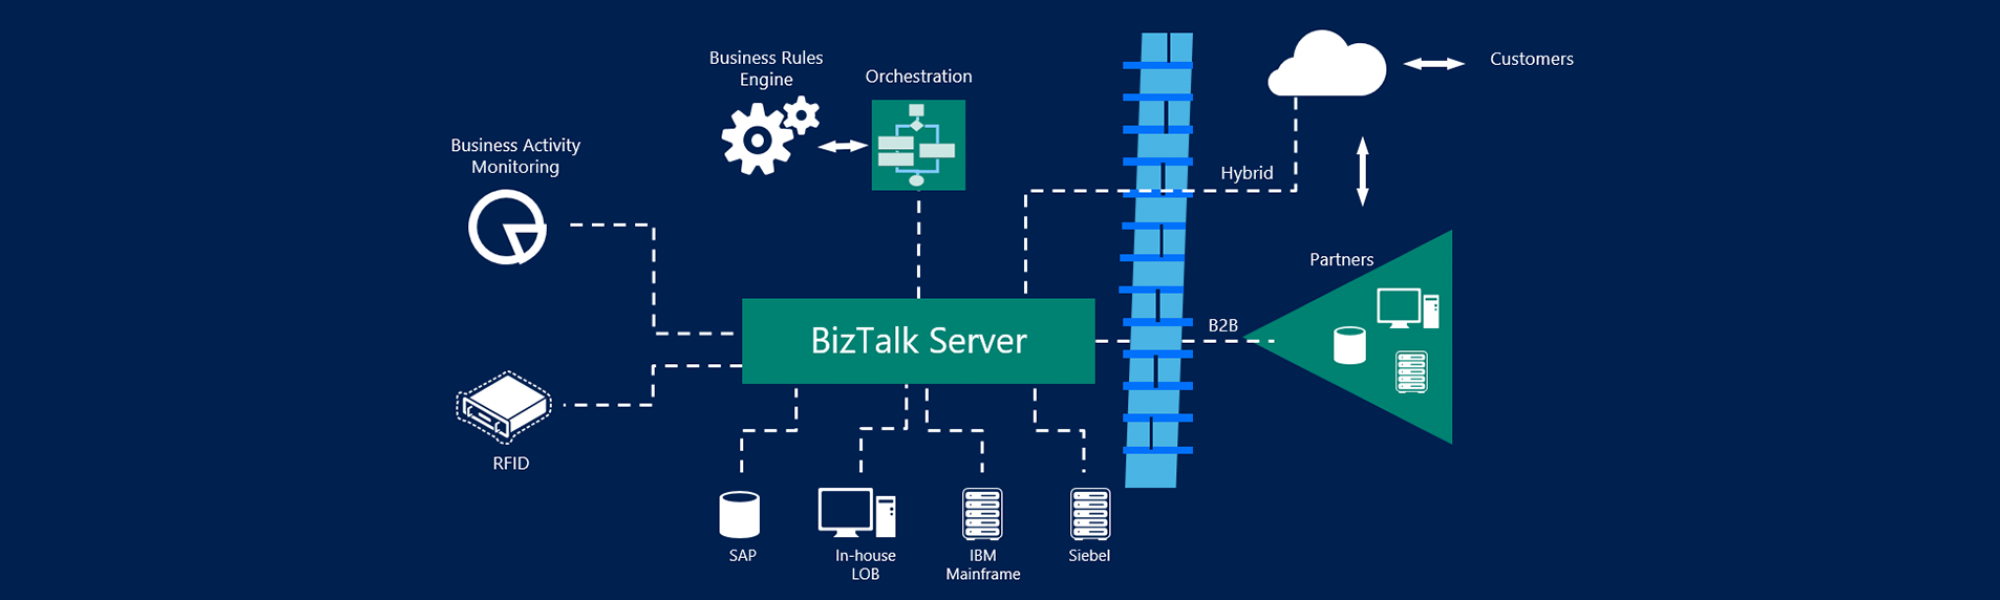 Why Microsoft BizTalk Server?